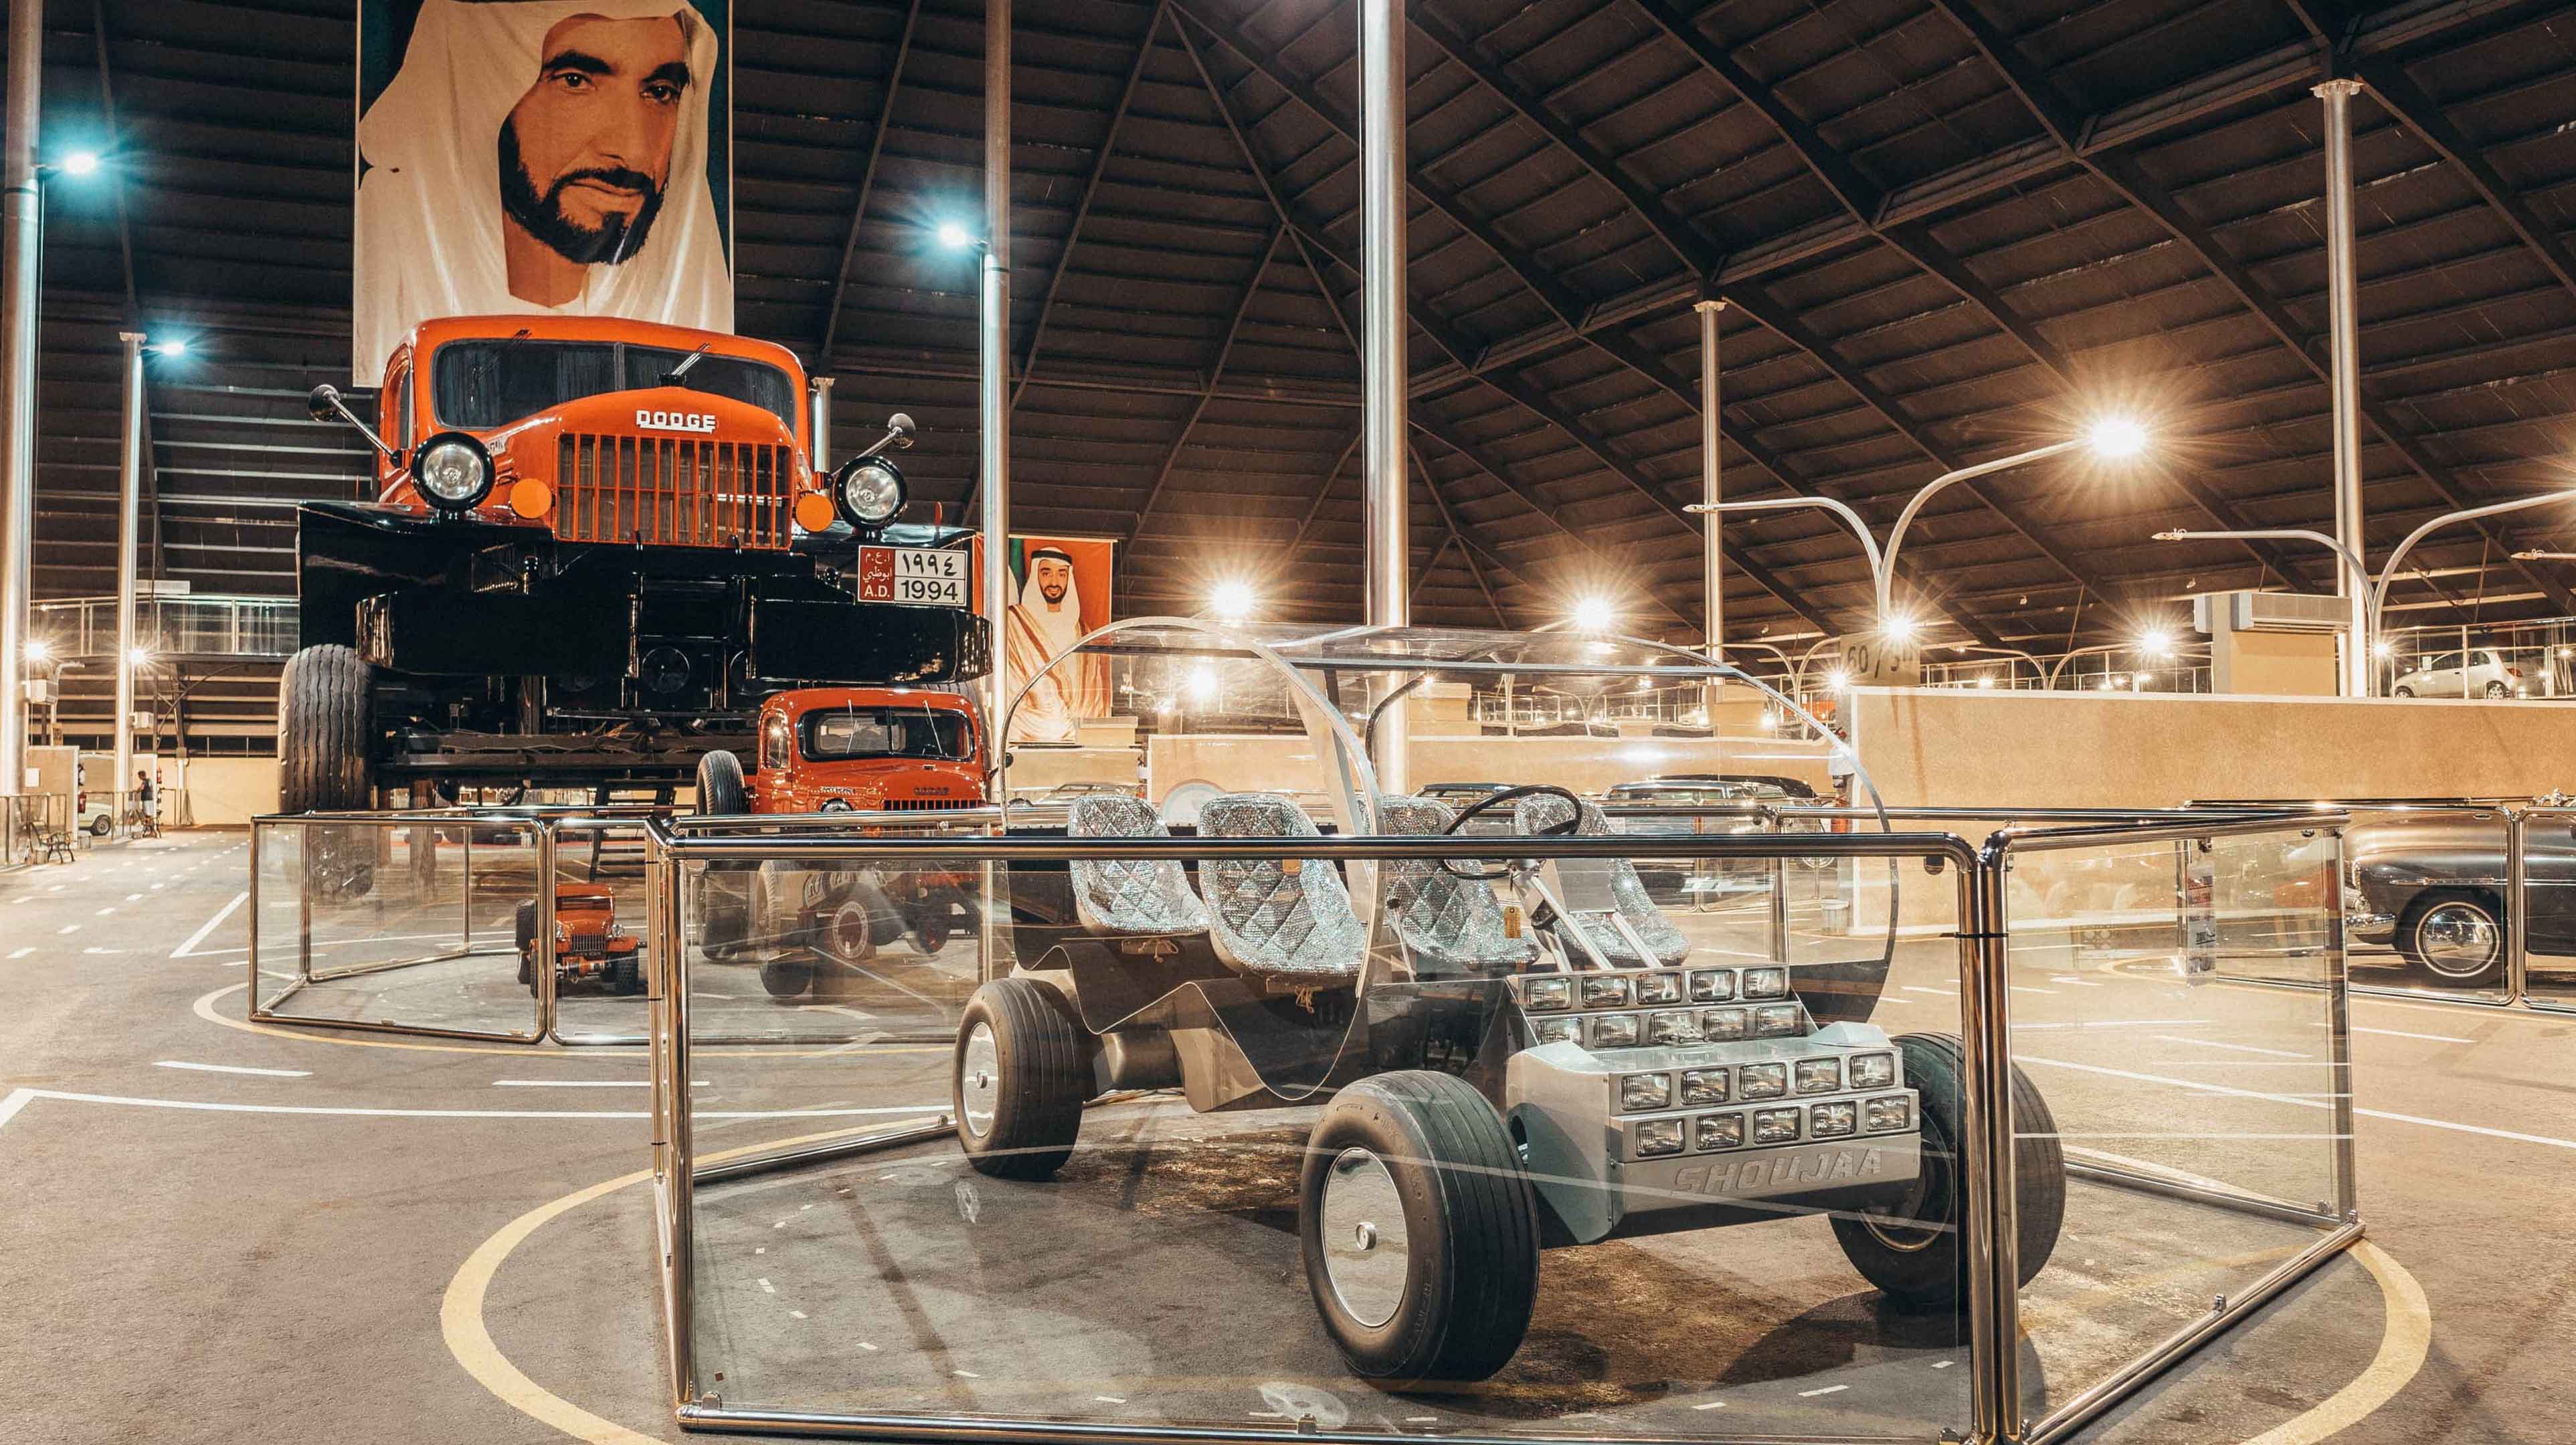 Emirates National Auto Museum